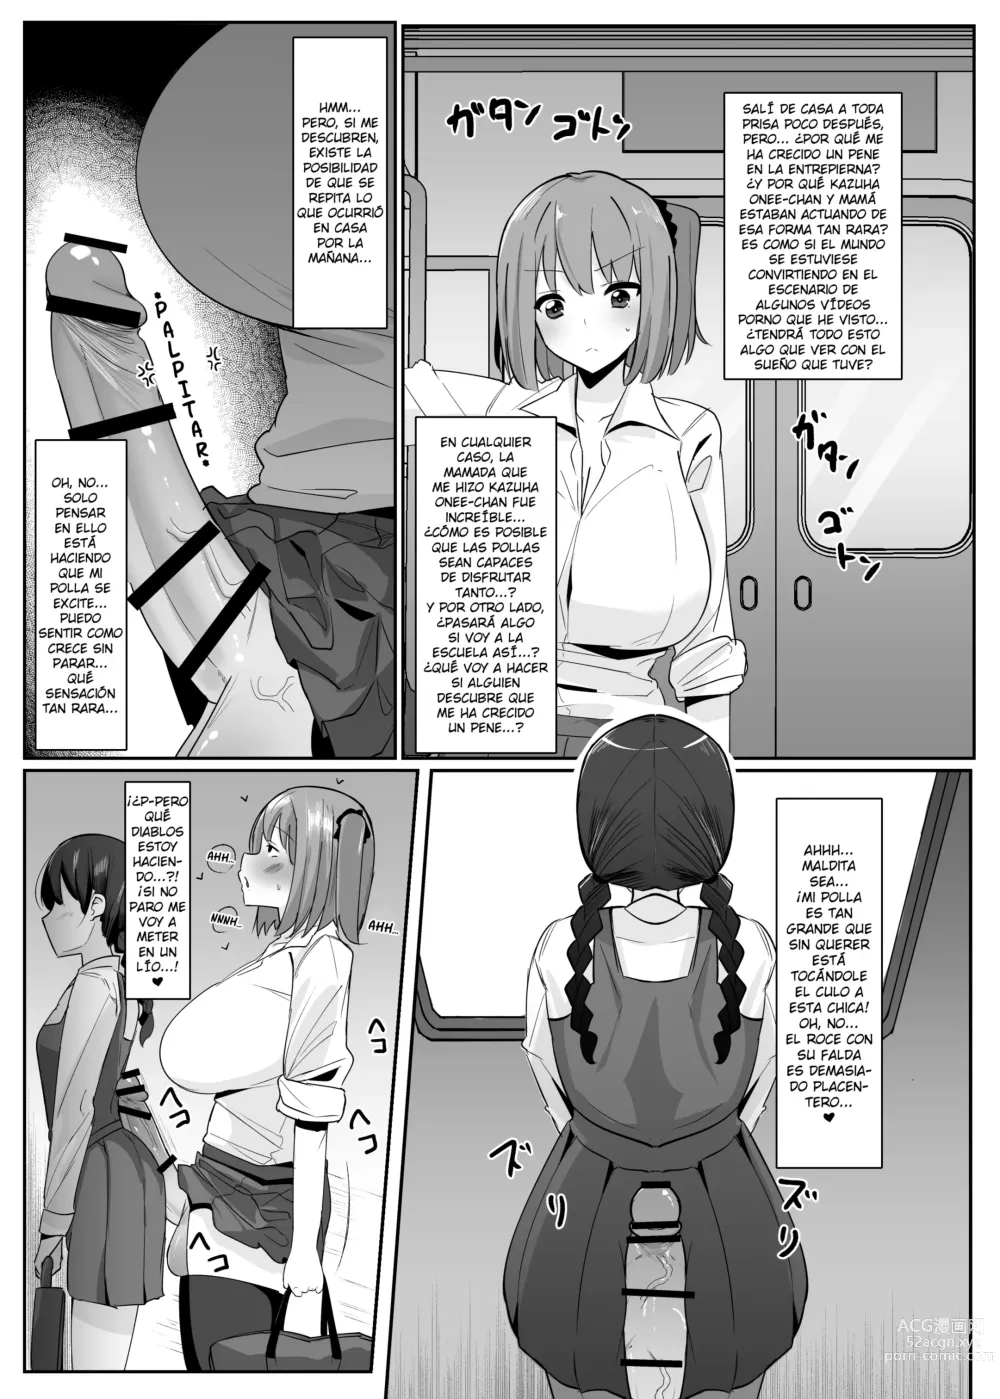 Page 6 of doujinshi ¡Un día me desperté y de repente hacer eyacular a las futanaris era lo más normal del mundo!